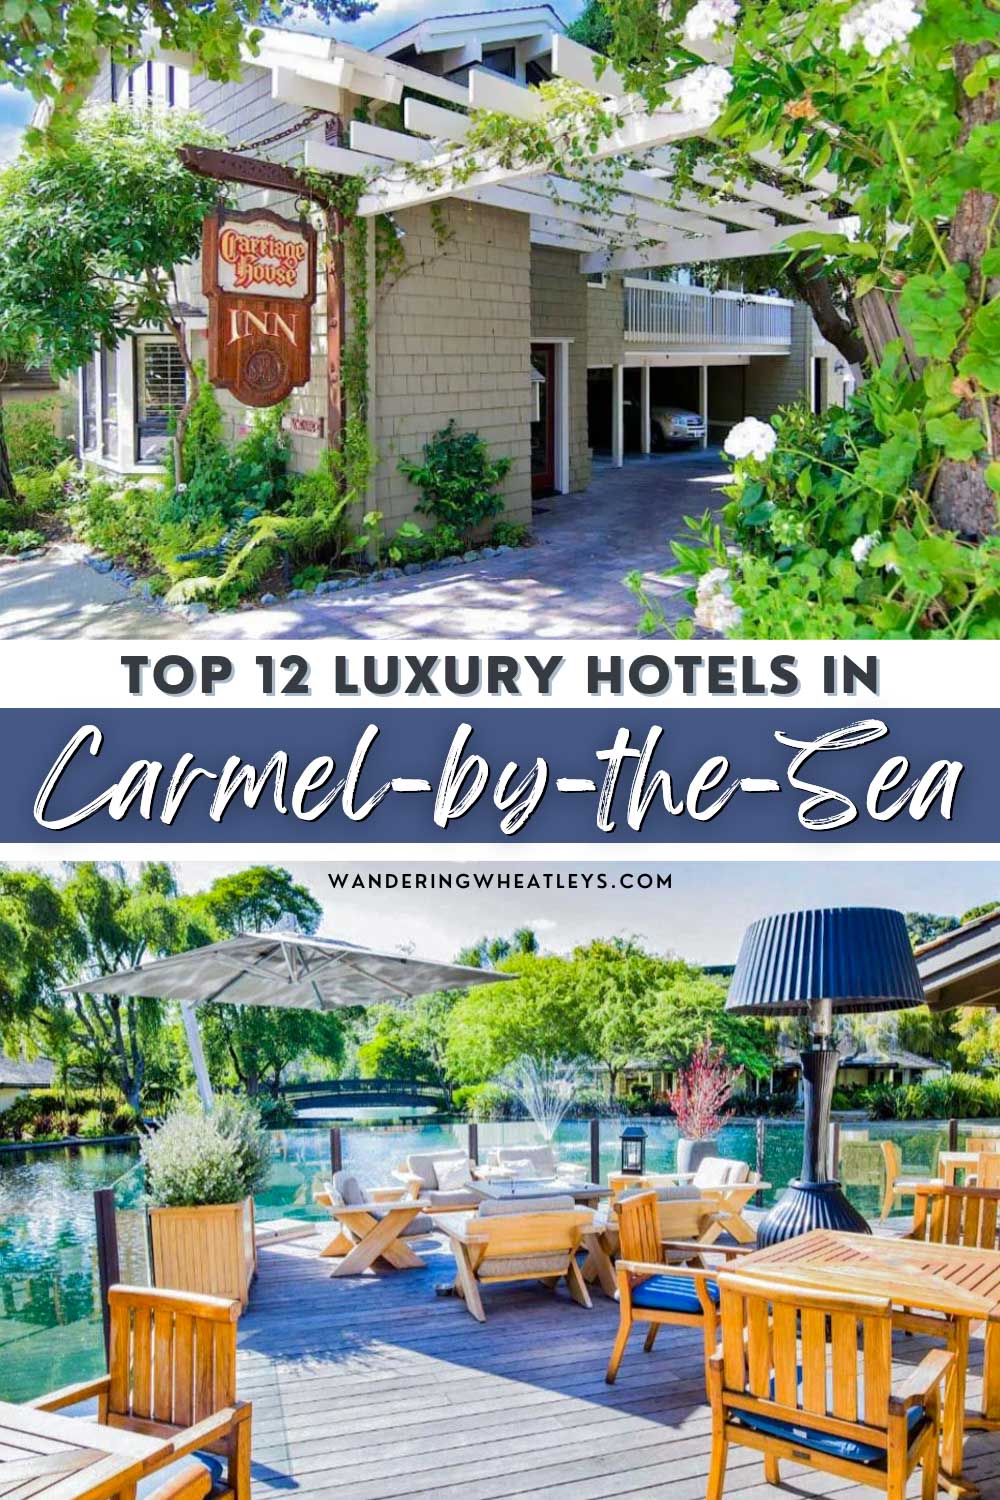 Best Luxury Hotels in Carmel-by-the-sea